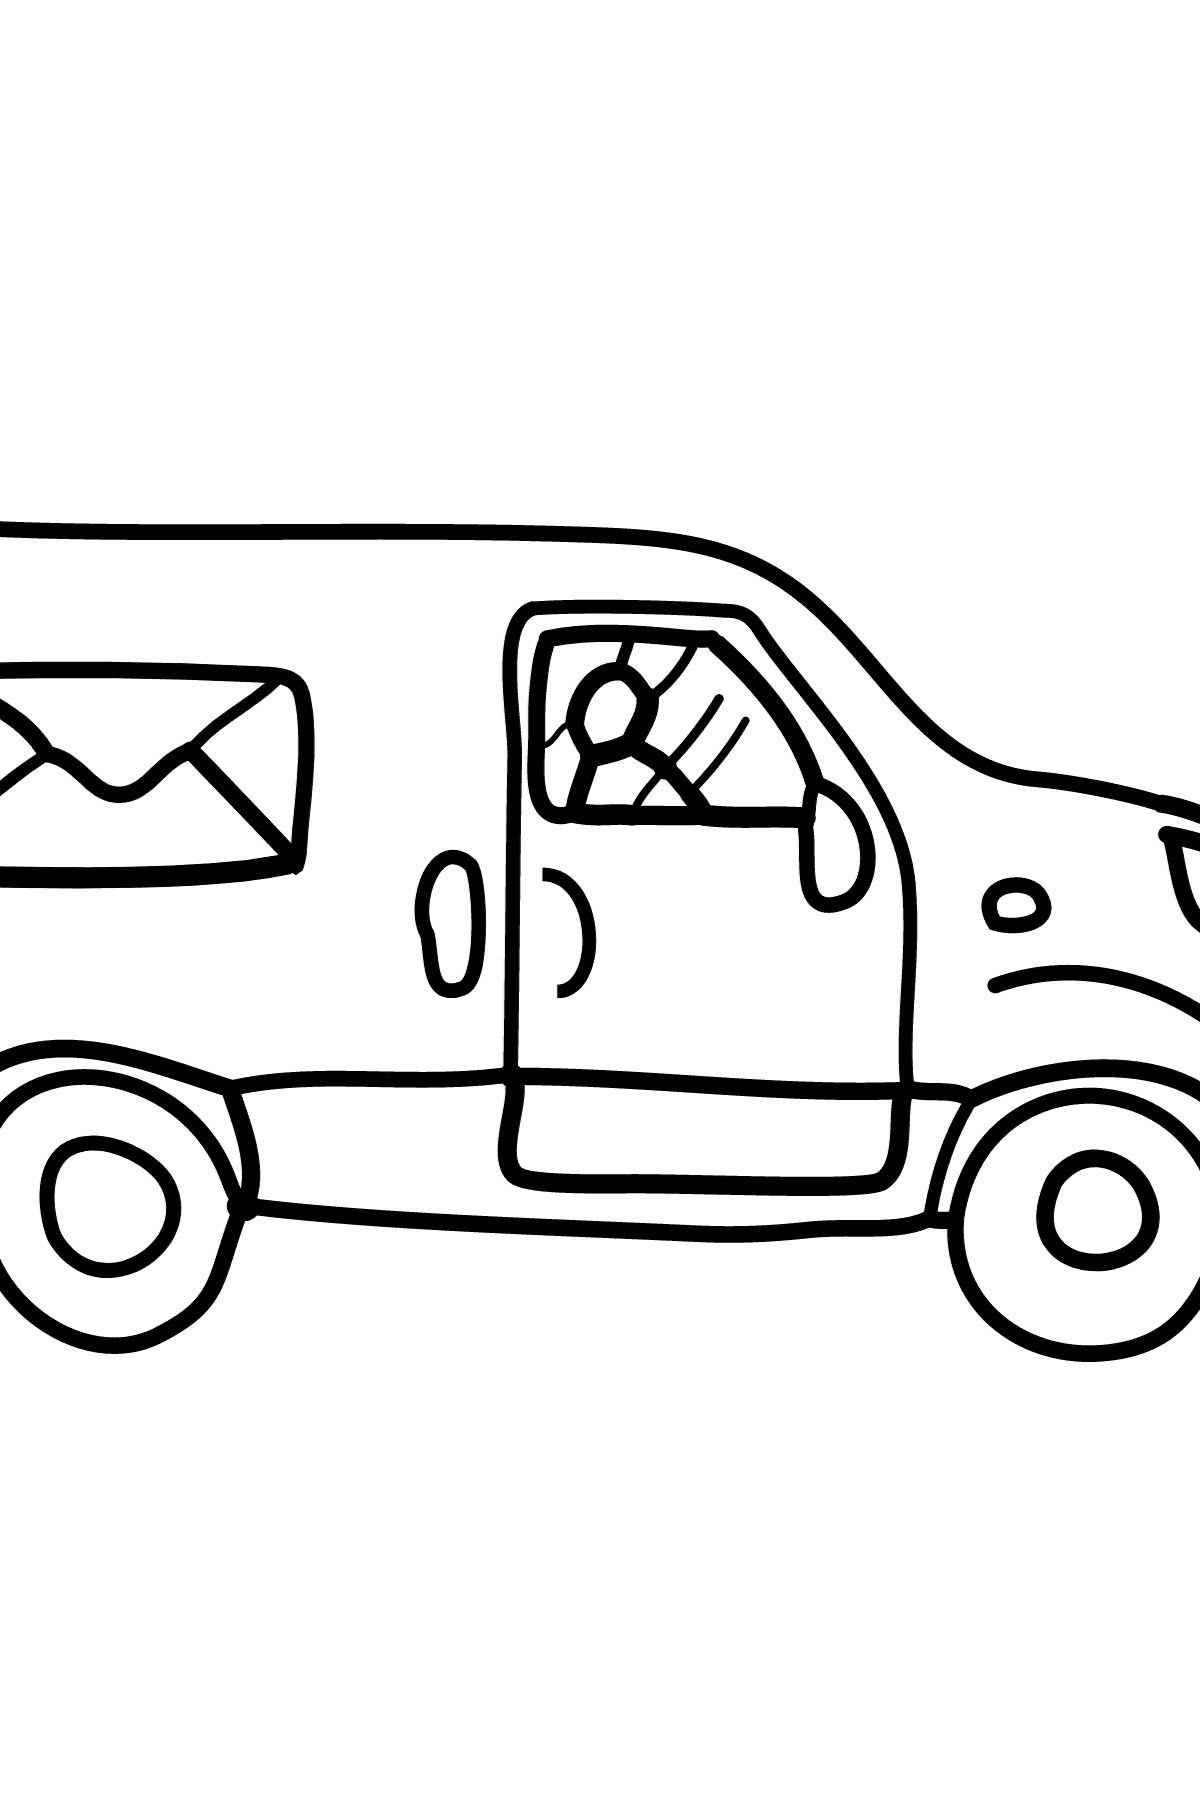 Bild von Auto zum Ausmalen - Ein Wagen transportiert Post